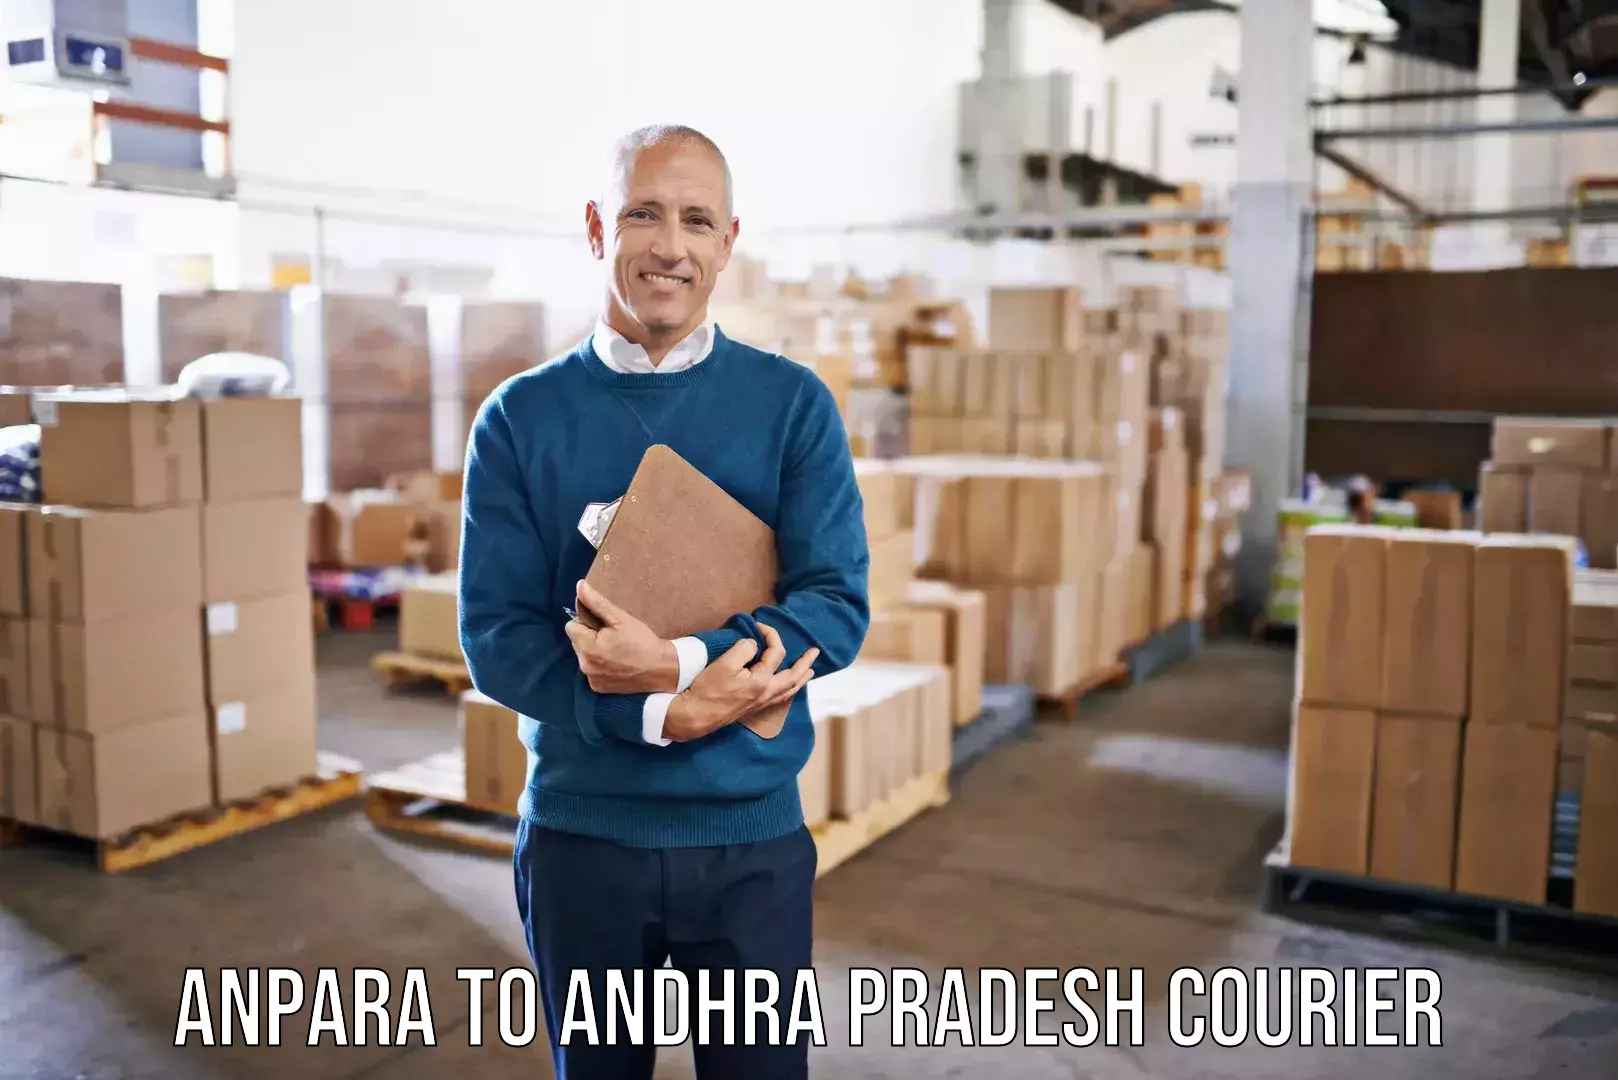 Home shifting experts Anpara to Andhra Pradesh